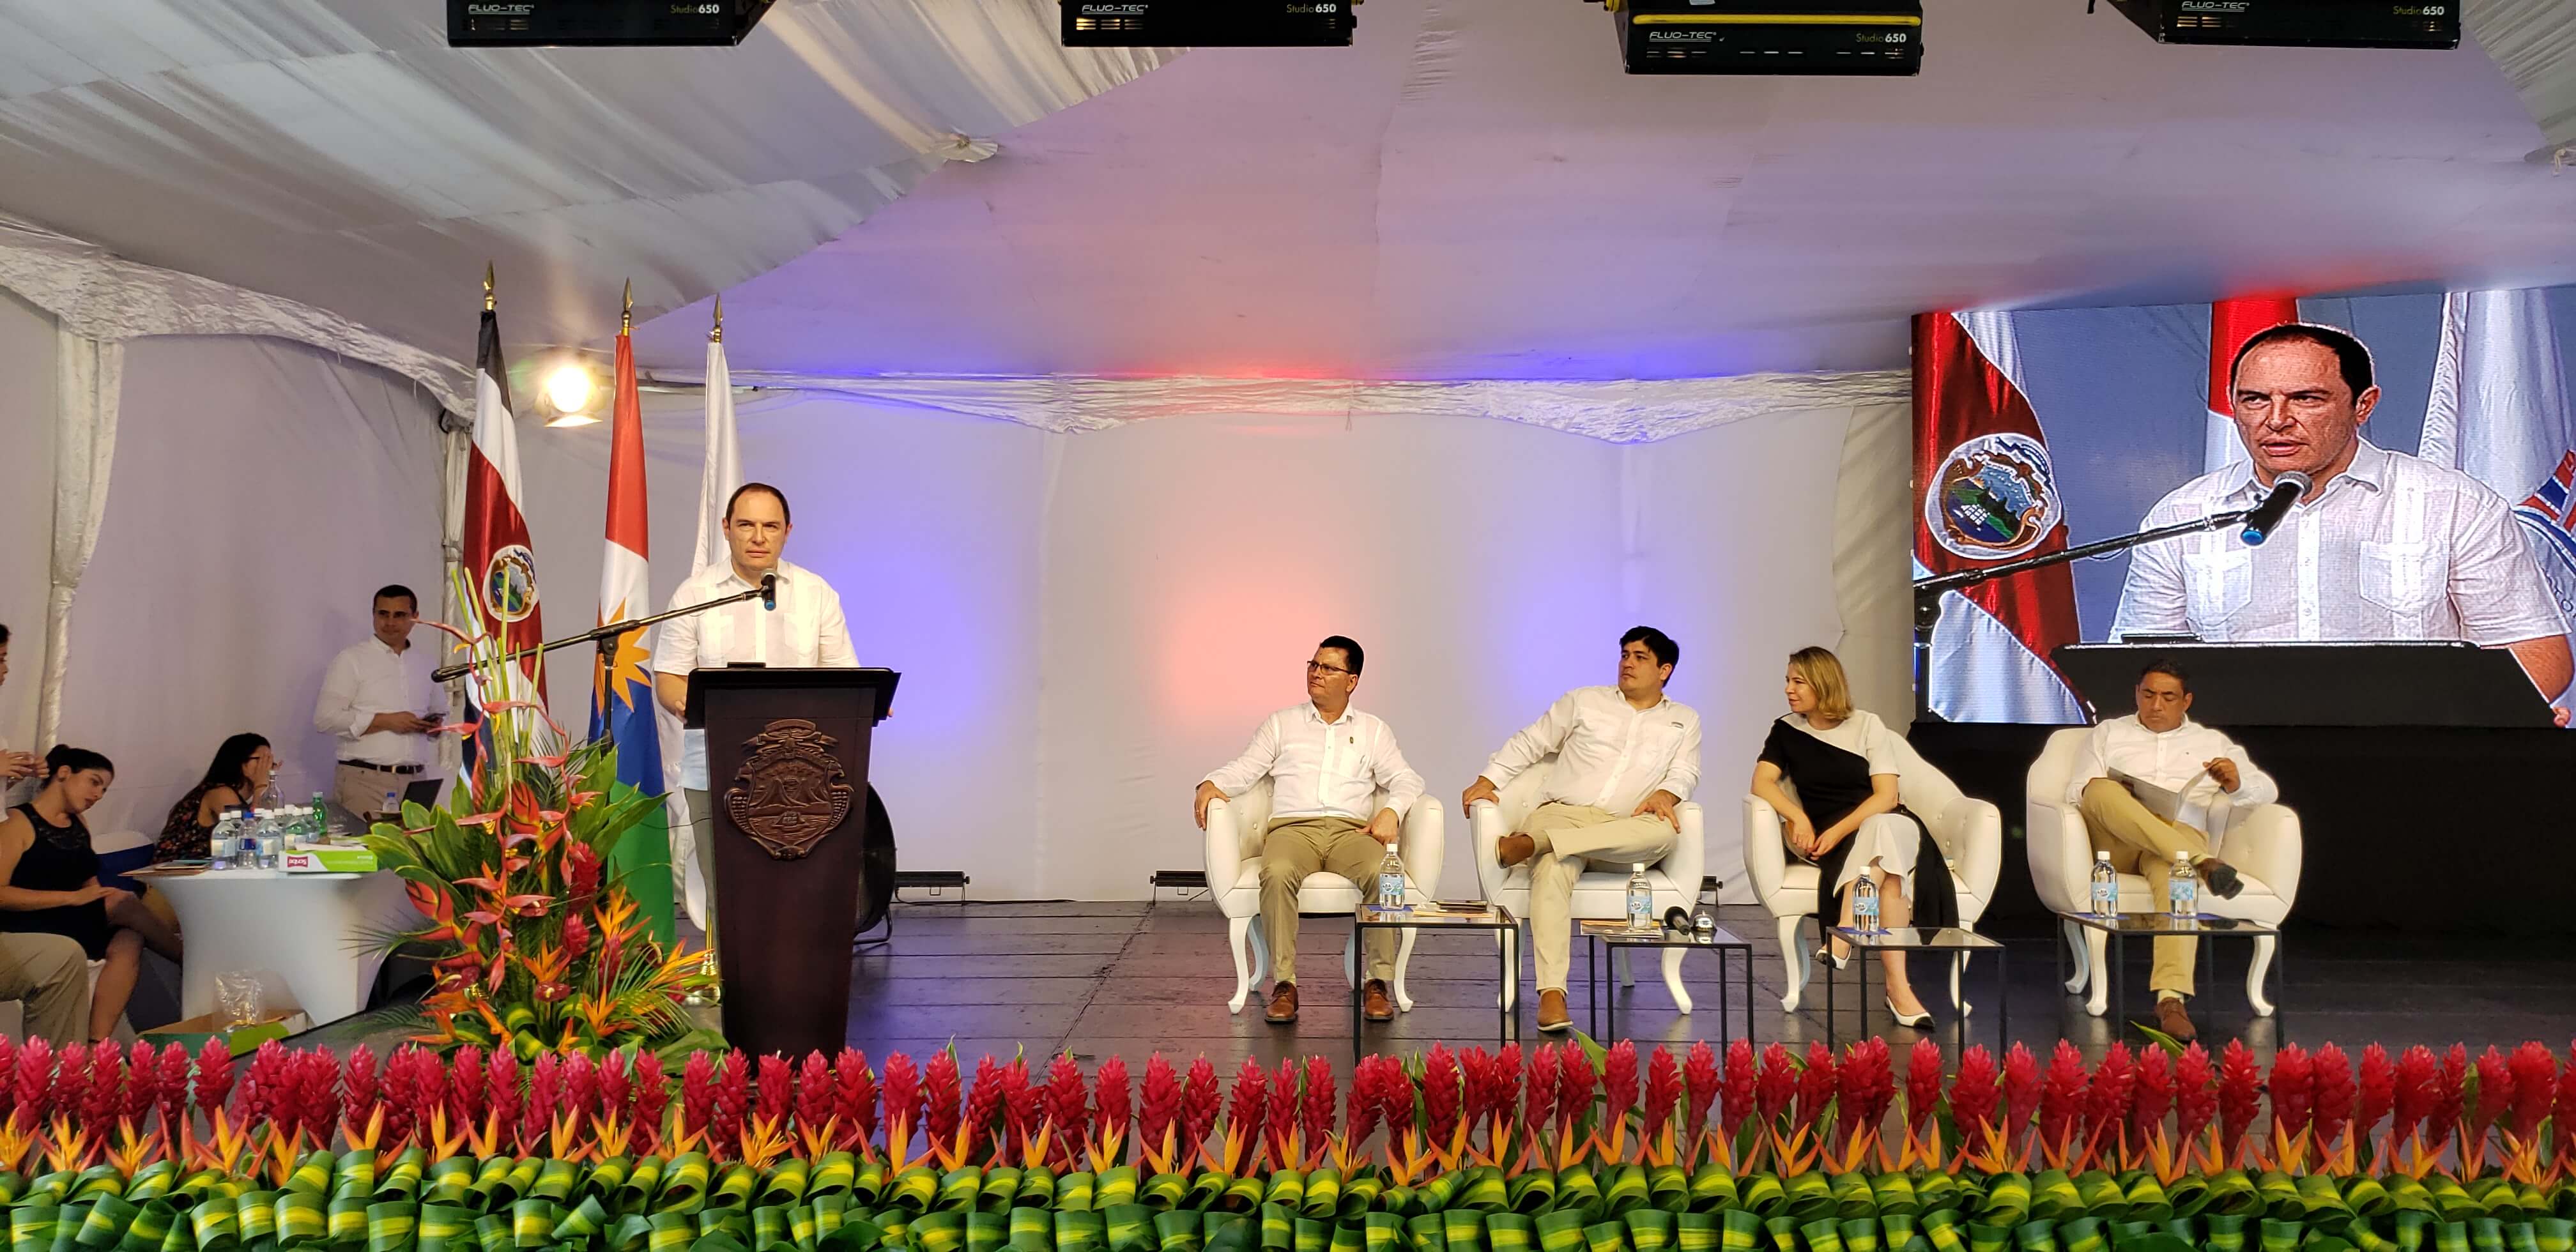 El señor Tomás Martínez, explica el Proyecto de Renovación Urbana para Puntarenas, así como el Proyecto Diseño Paisajístico Boulevard Acceso a Puntarenas.